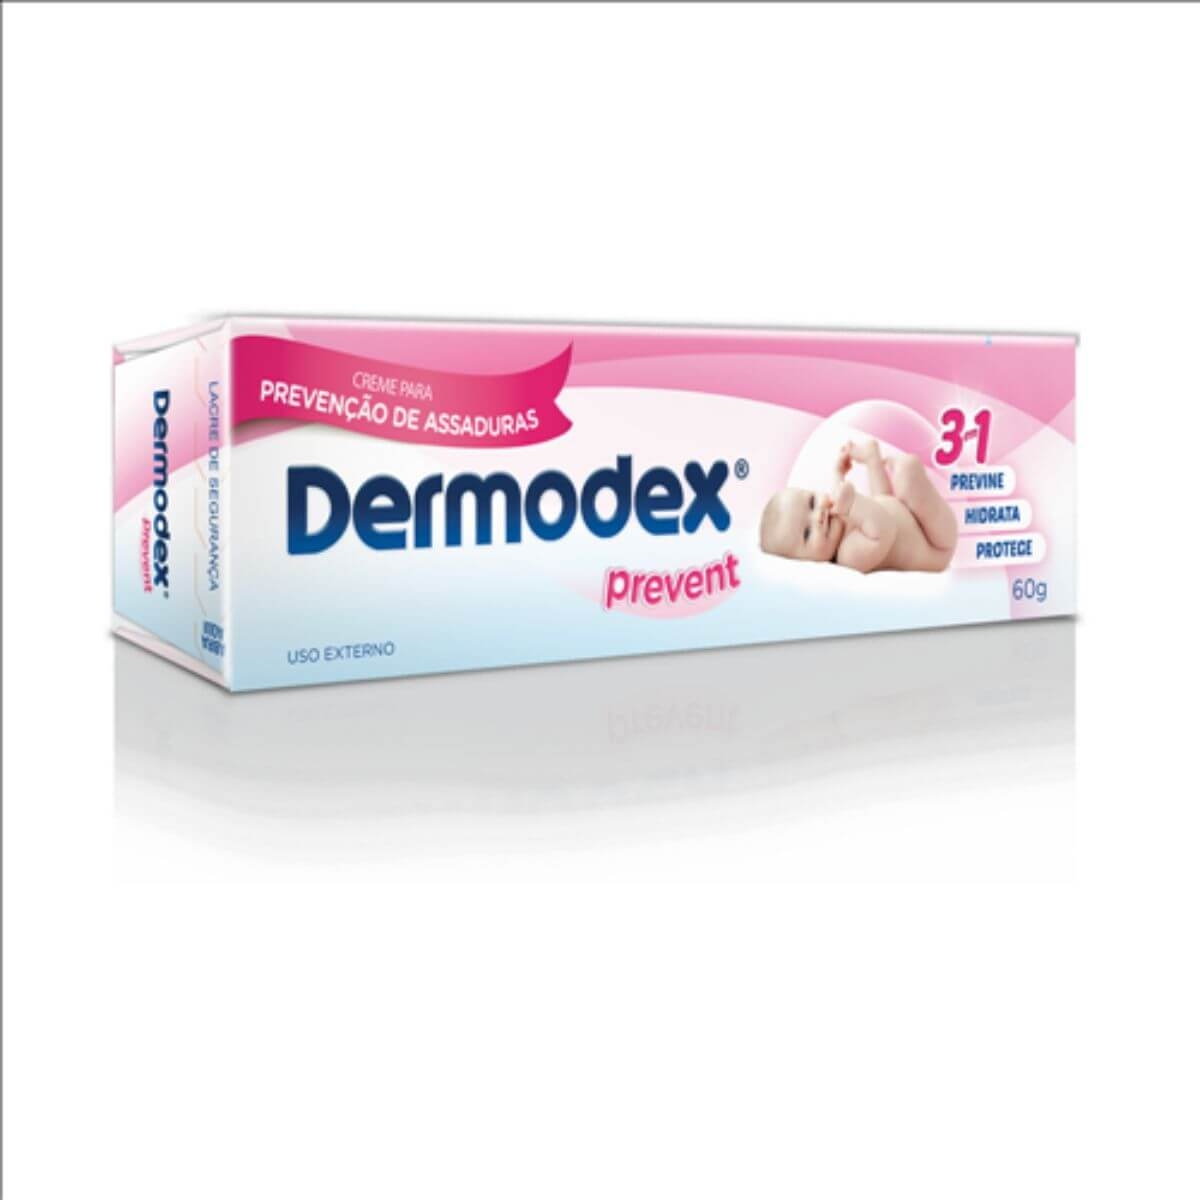 Creme para Prevenção de Assaduras Dermodex Prevent com 60g 60g